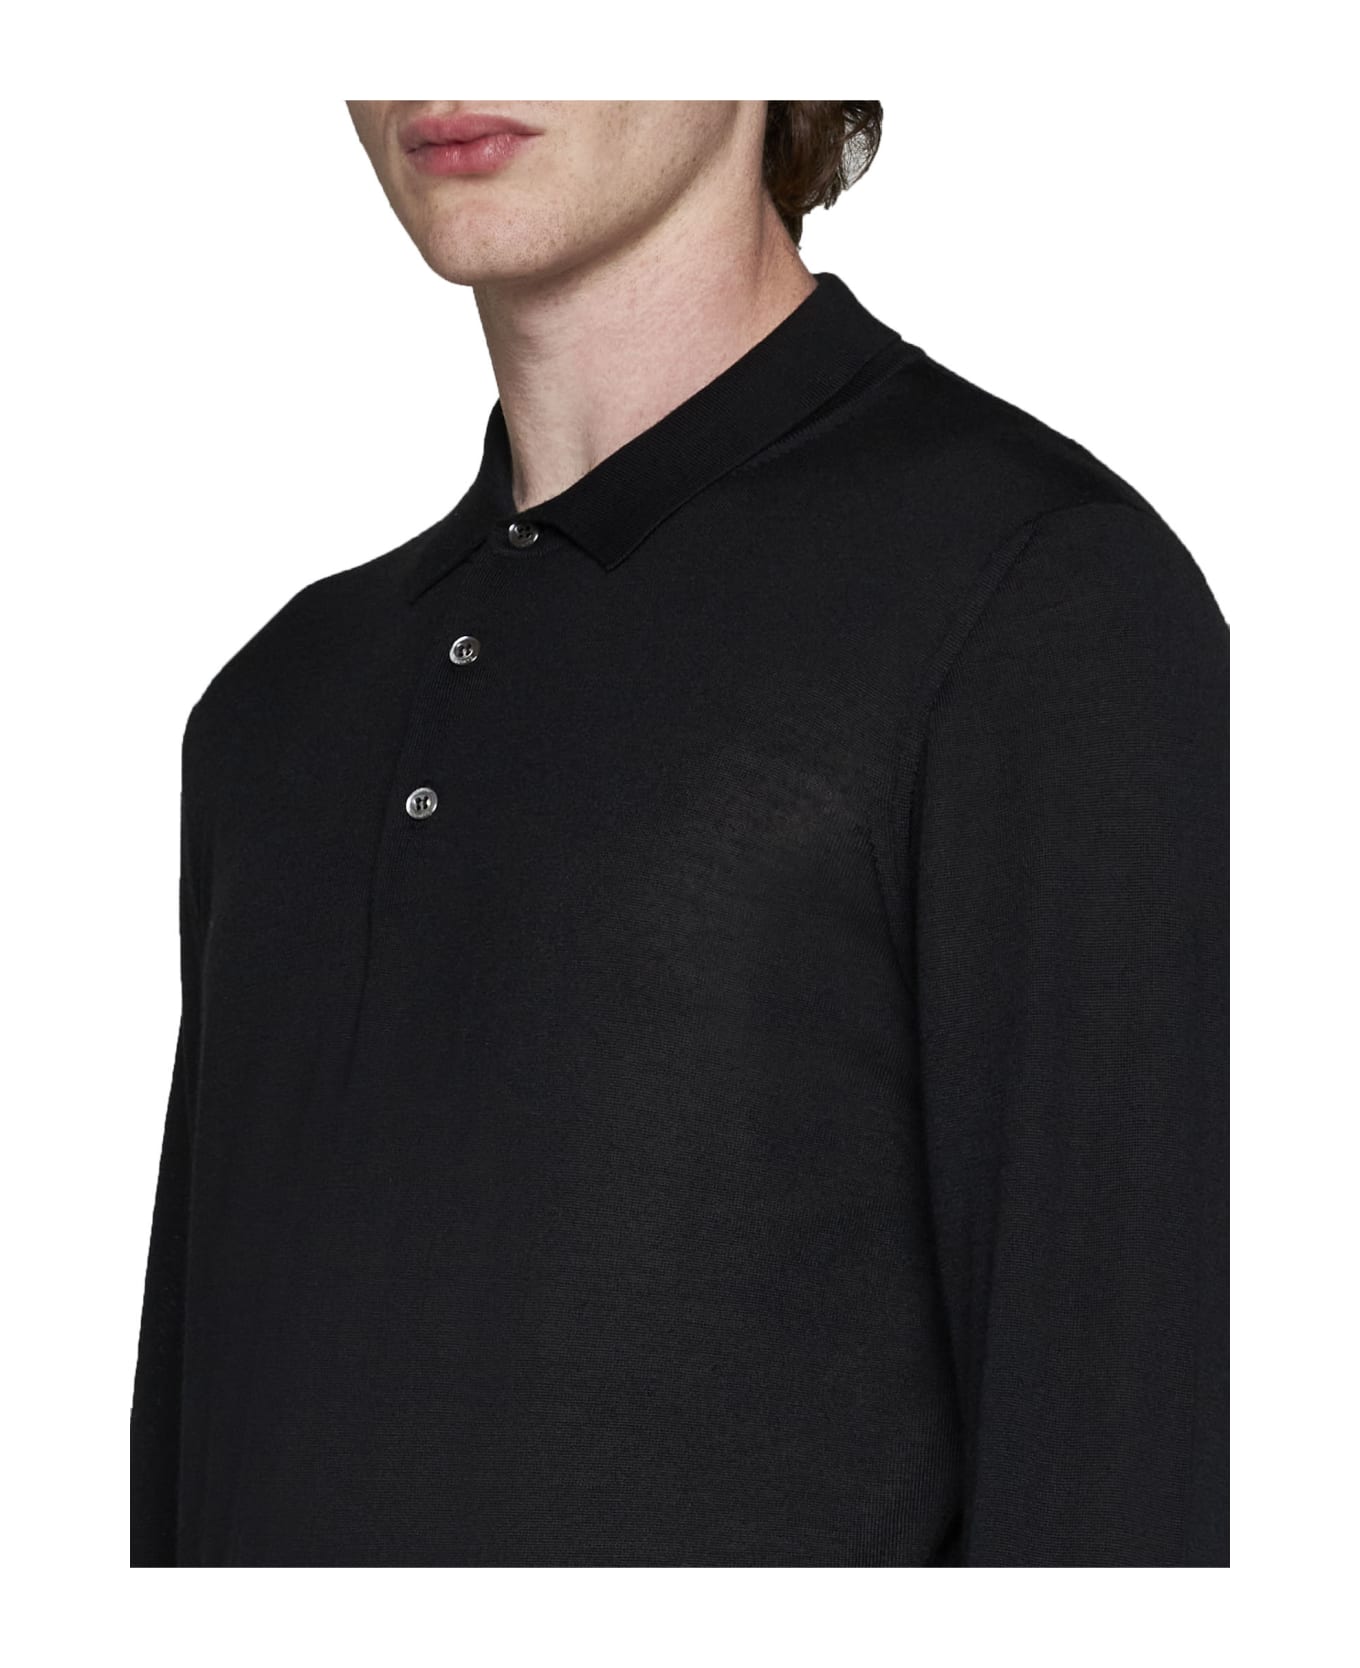 Caruso Polo Shirt - Black